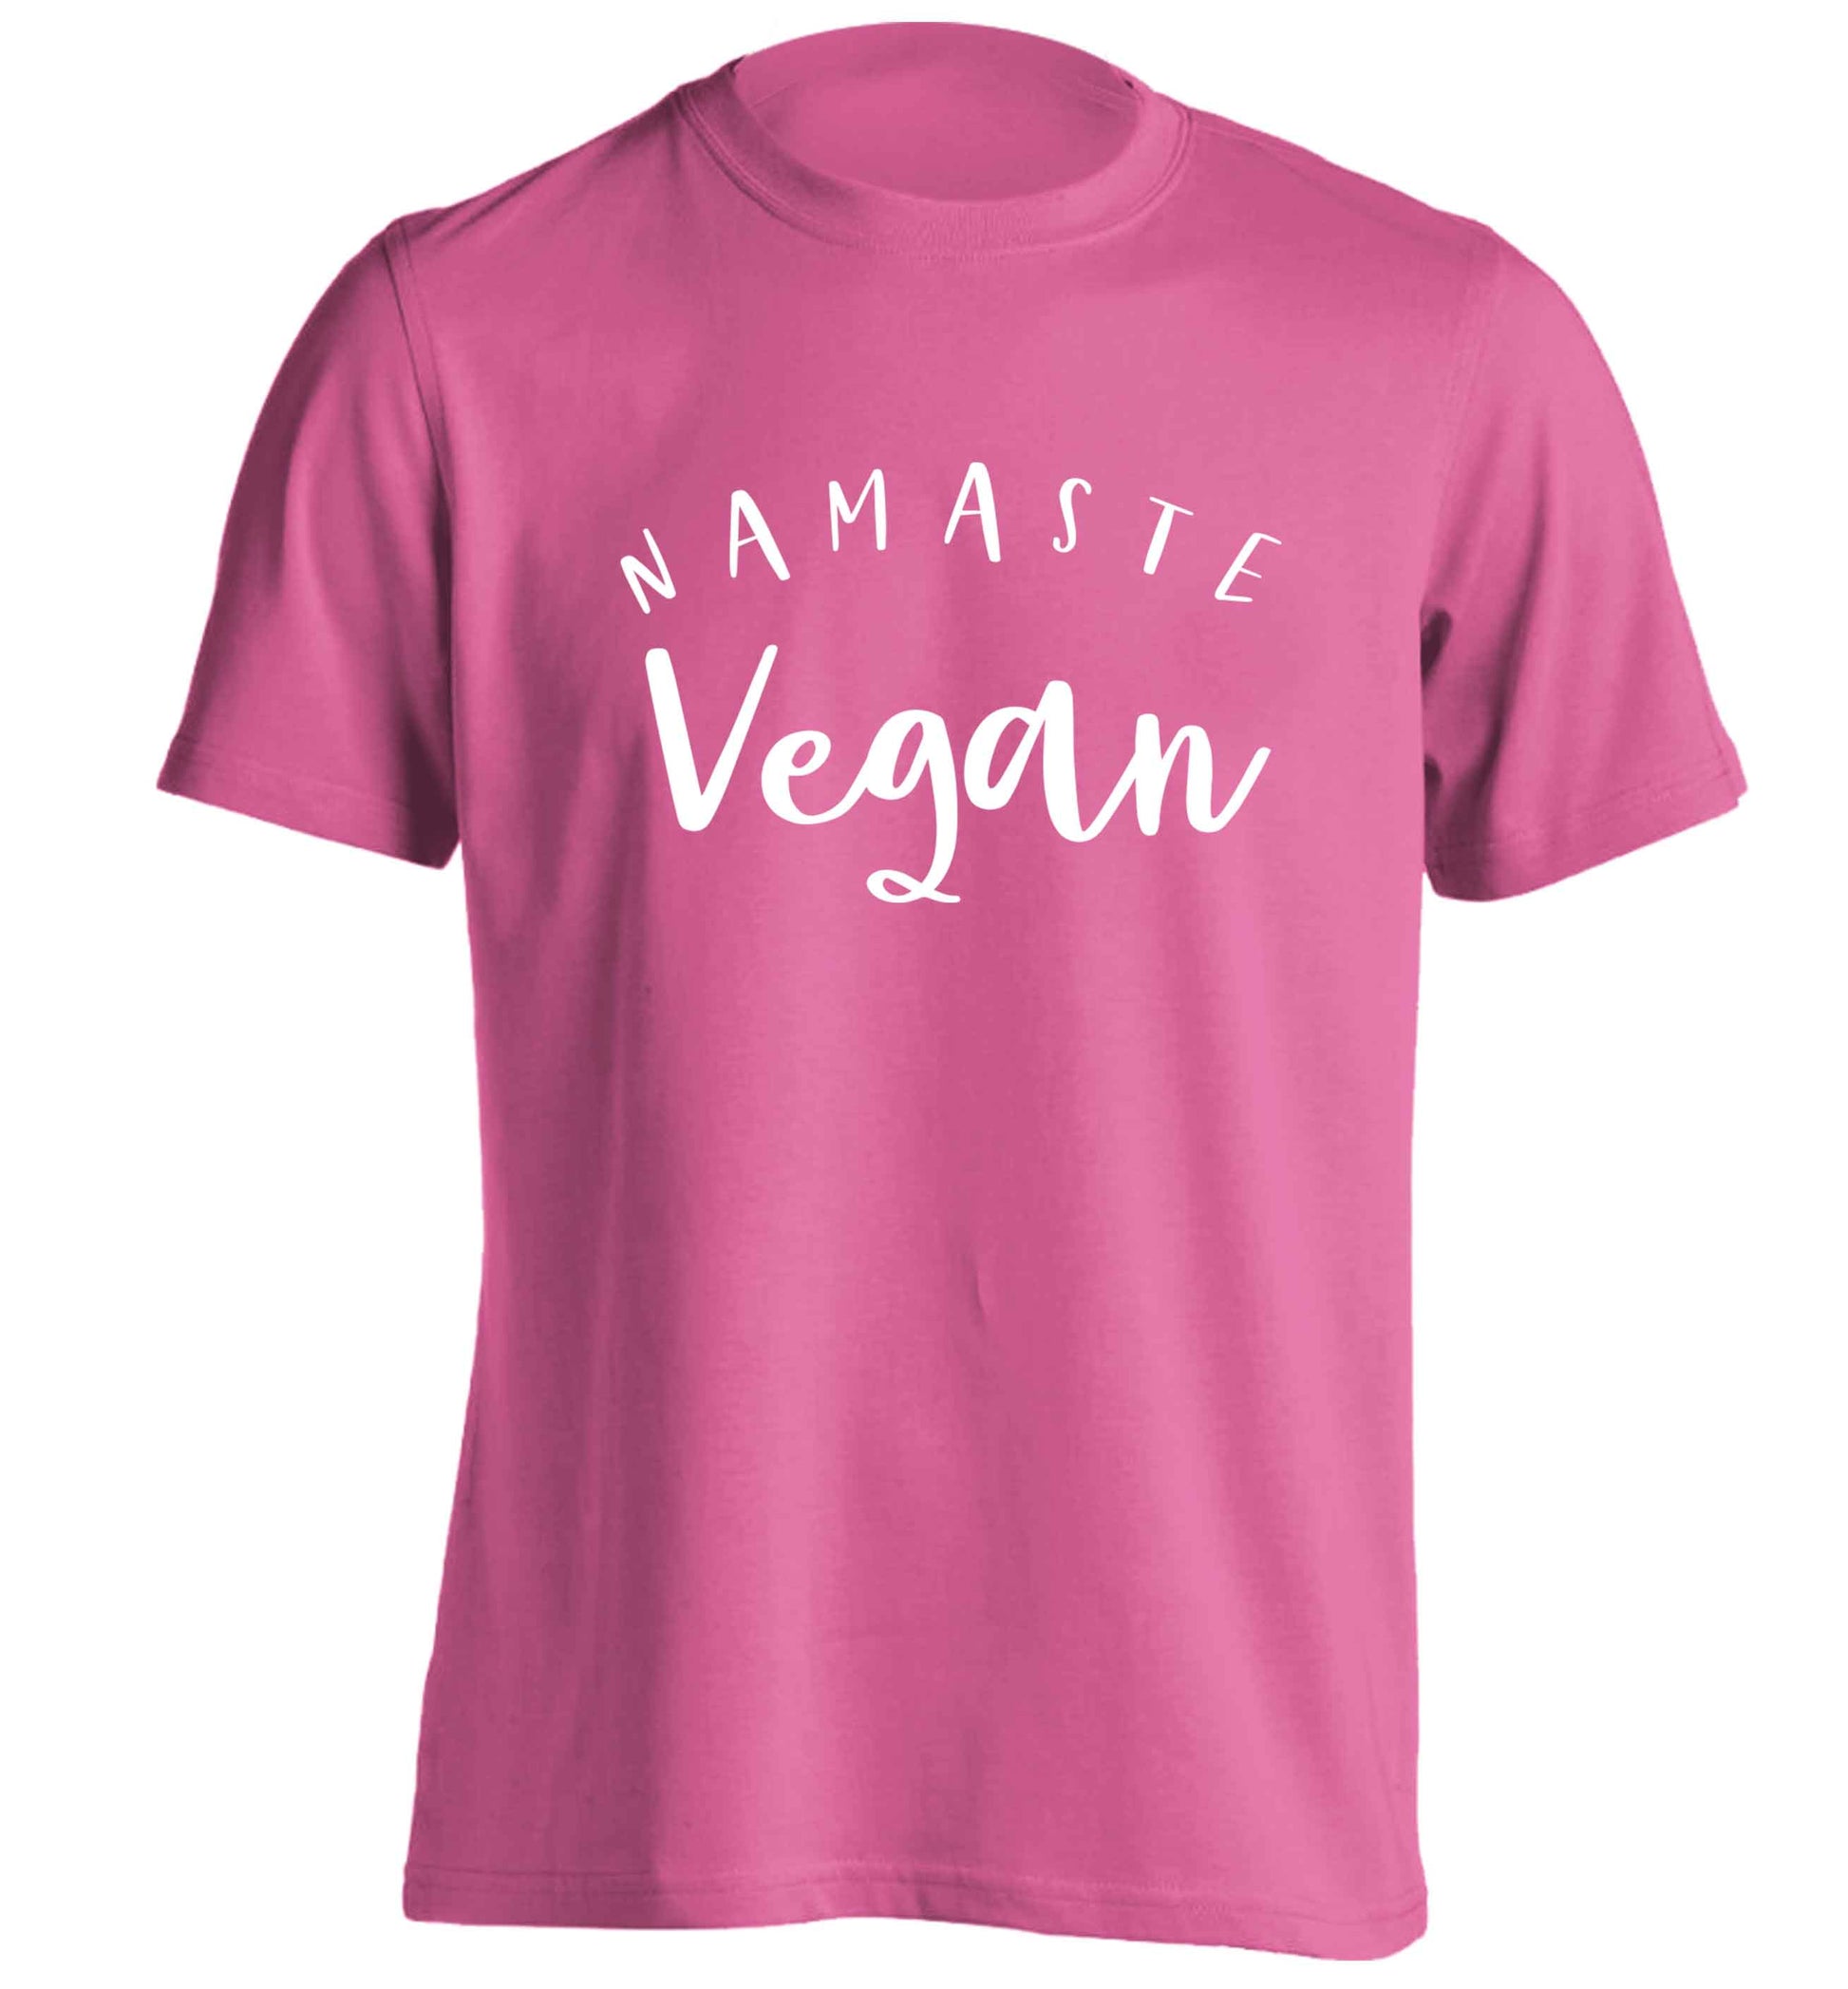 Namaste vegan adults unisex pink Tshirt 2XL